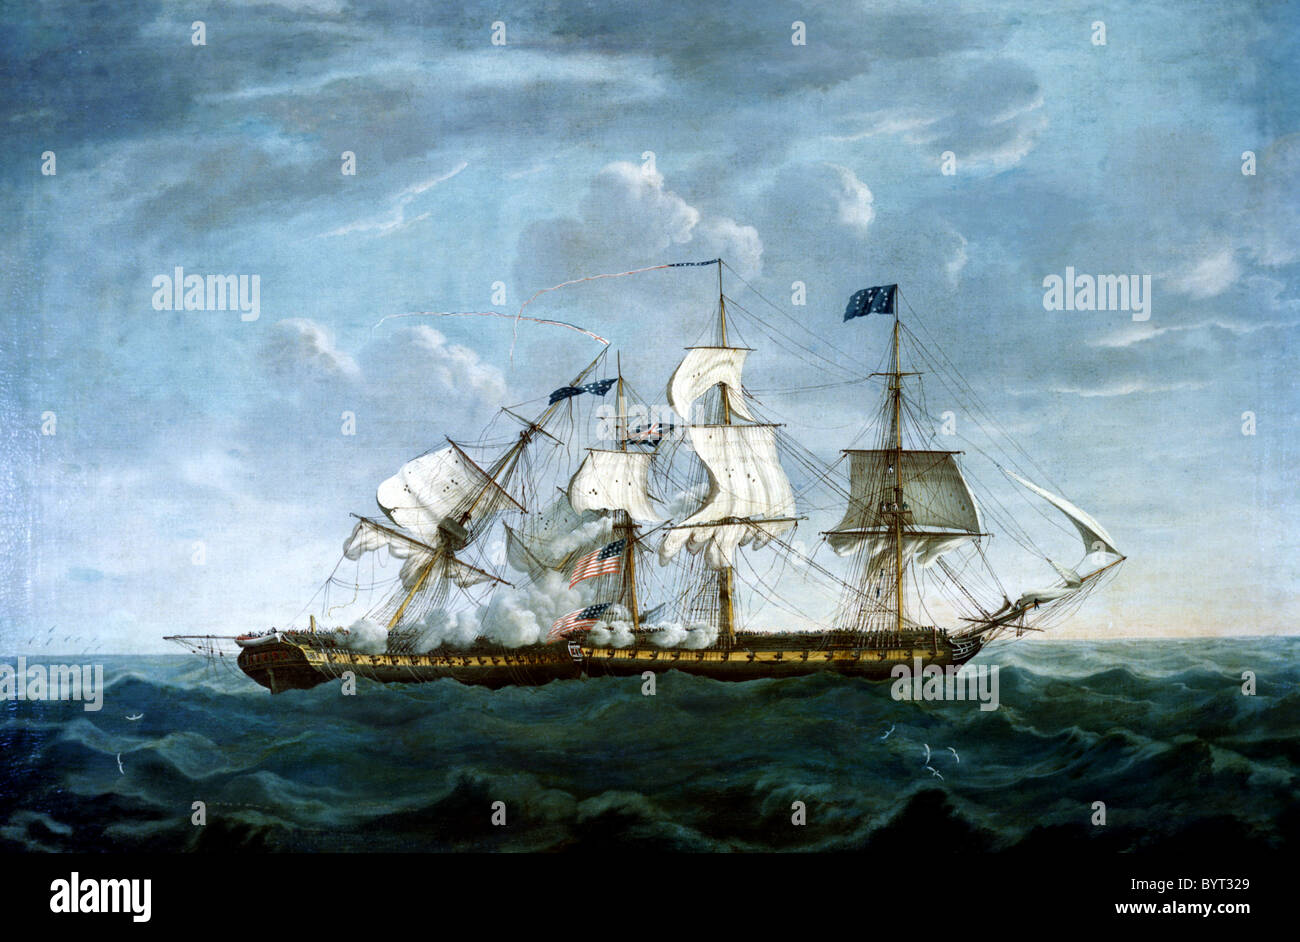 Stati Uniti Costituzione di fregate come ella sconfigge il dispositivo HMS Guerriere durante la guerra del 1812 contro la Gran Bretagna. Foto Stock